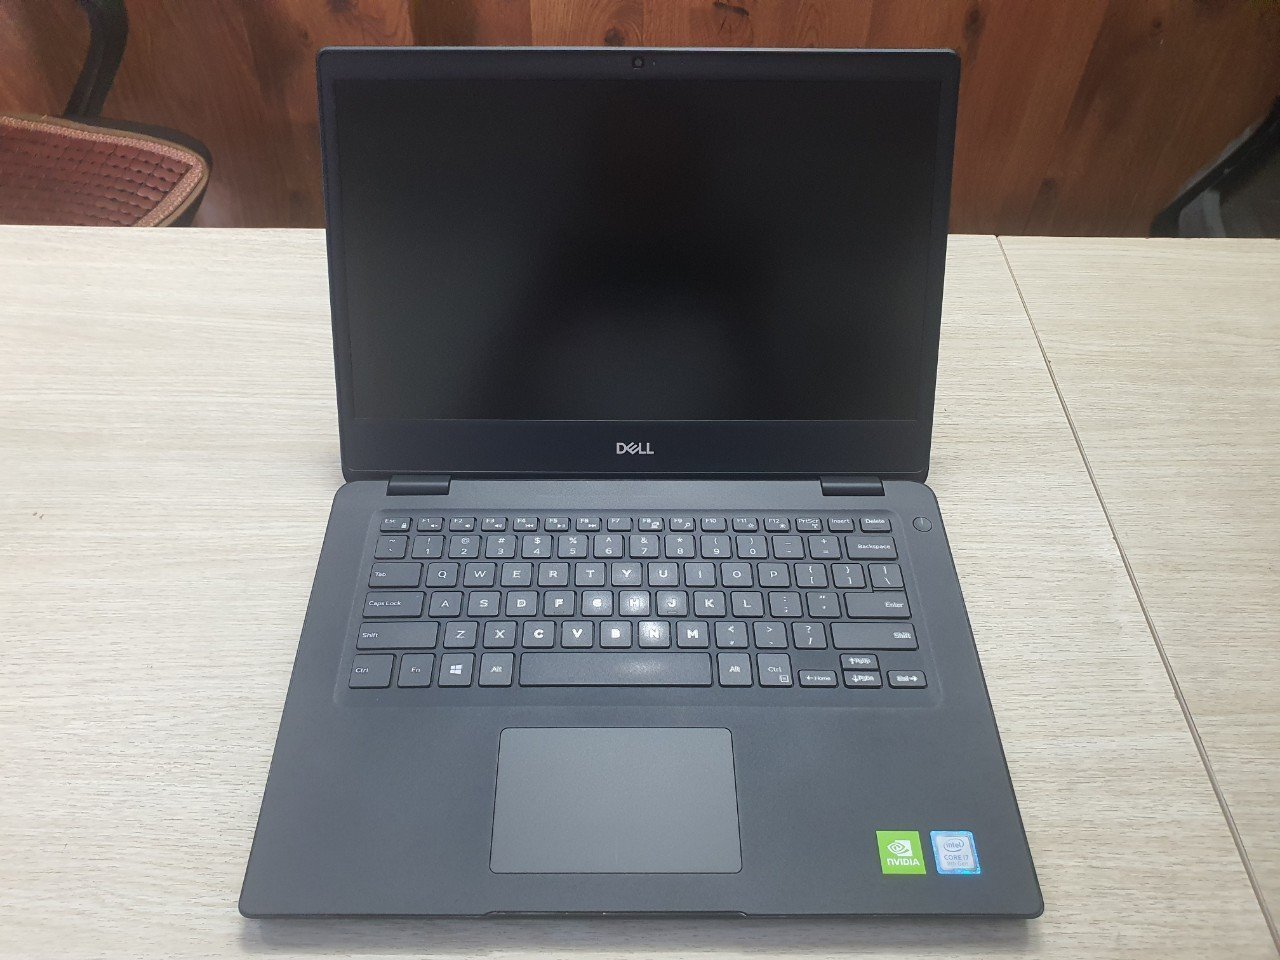 Khuyến mãi lớn: Mua Laptop Dell tại Thủ Dầu Một - Giảm ngay 200k khi check-in! - Ảnh 2